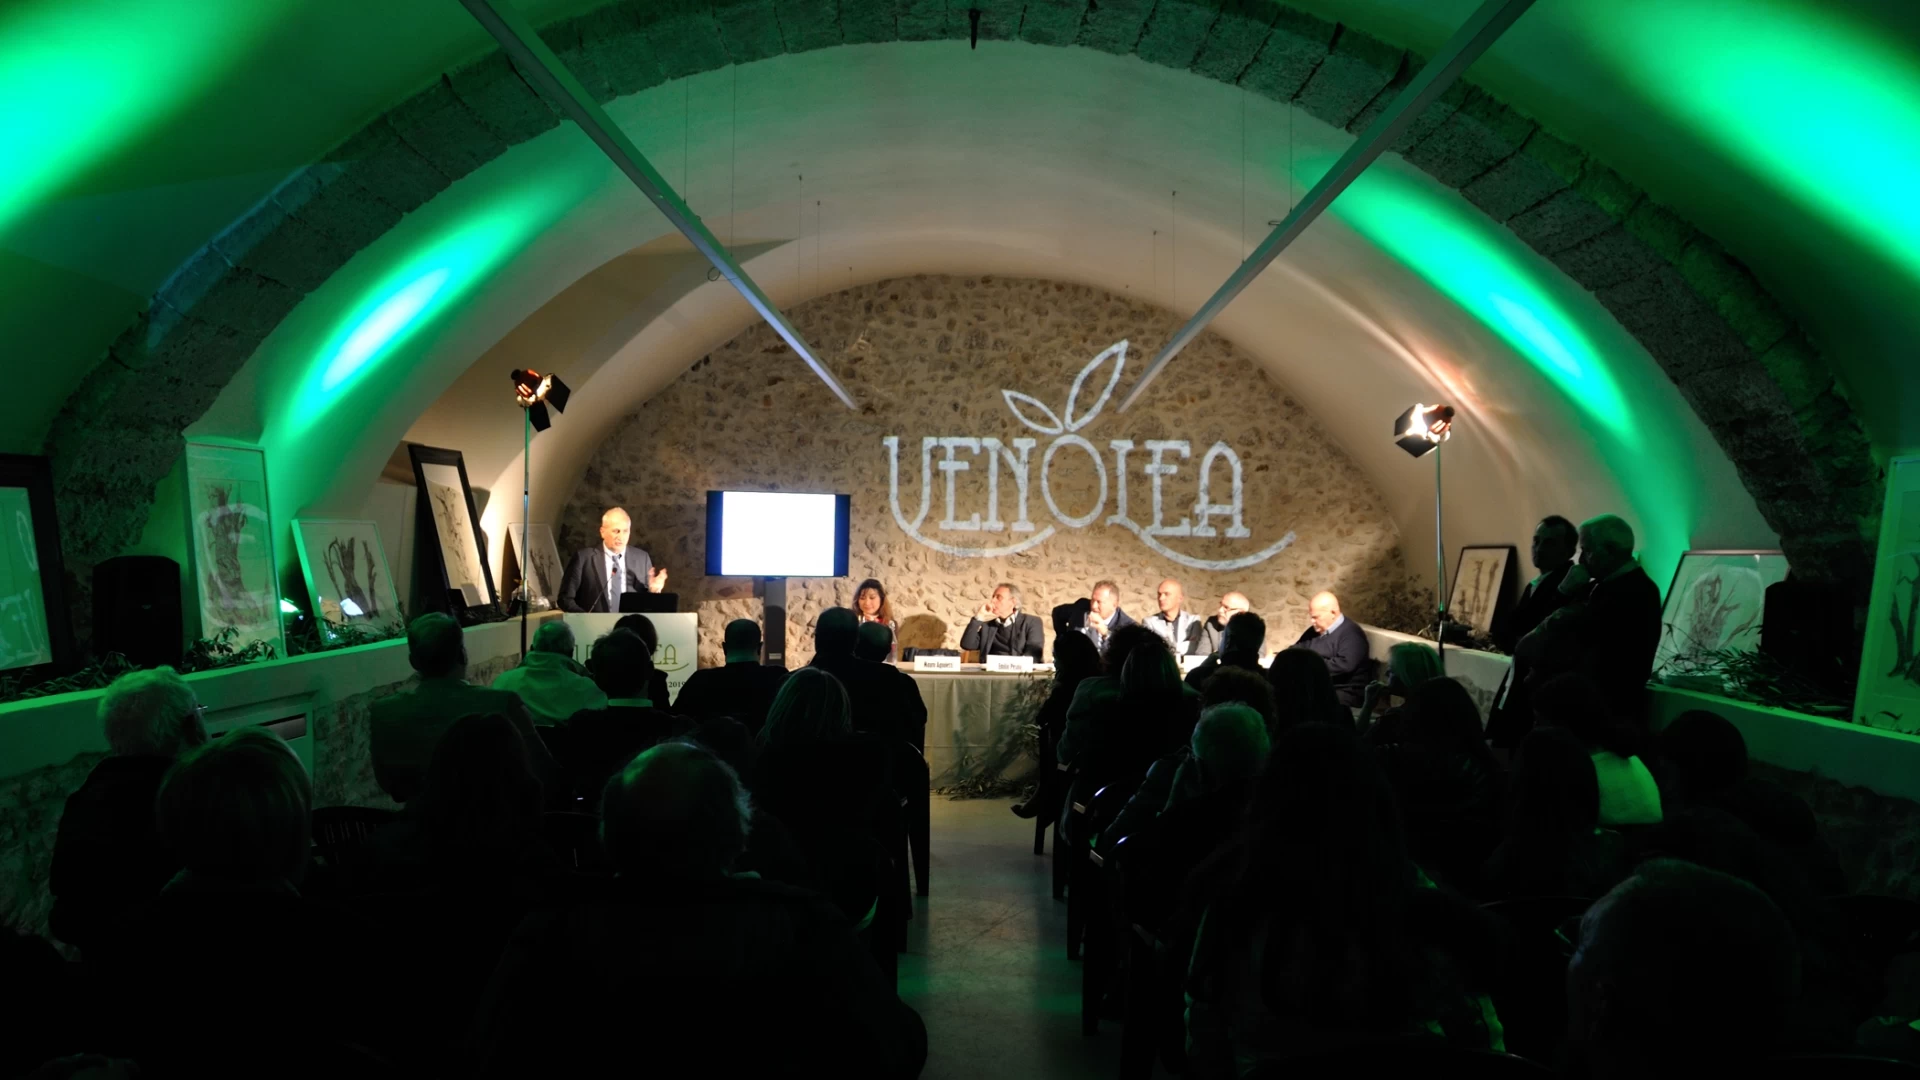 Parco regionale dell'Olivo di Venafro: assegnati i premi del concorso Plinius di Venolea 2020